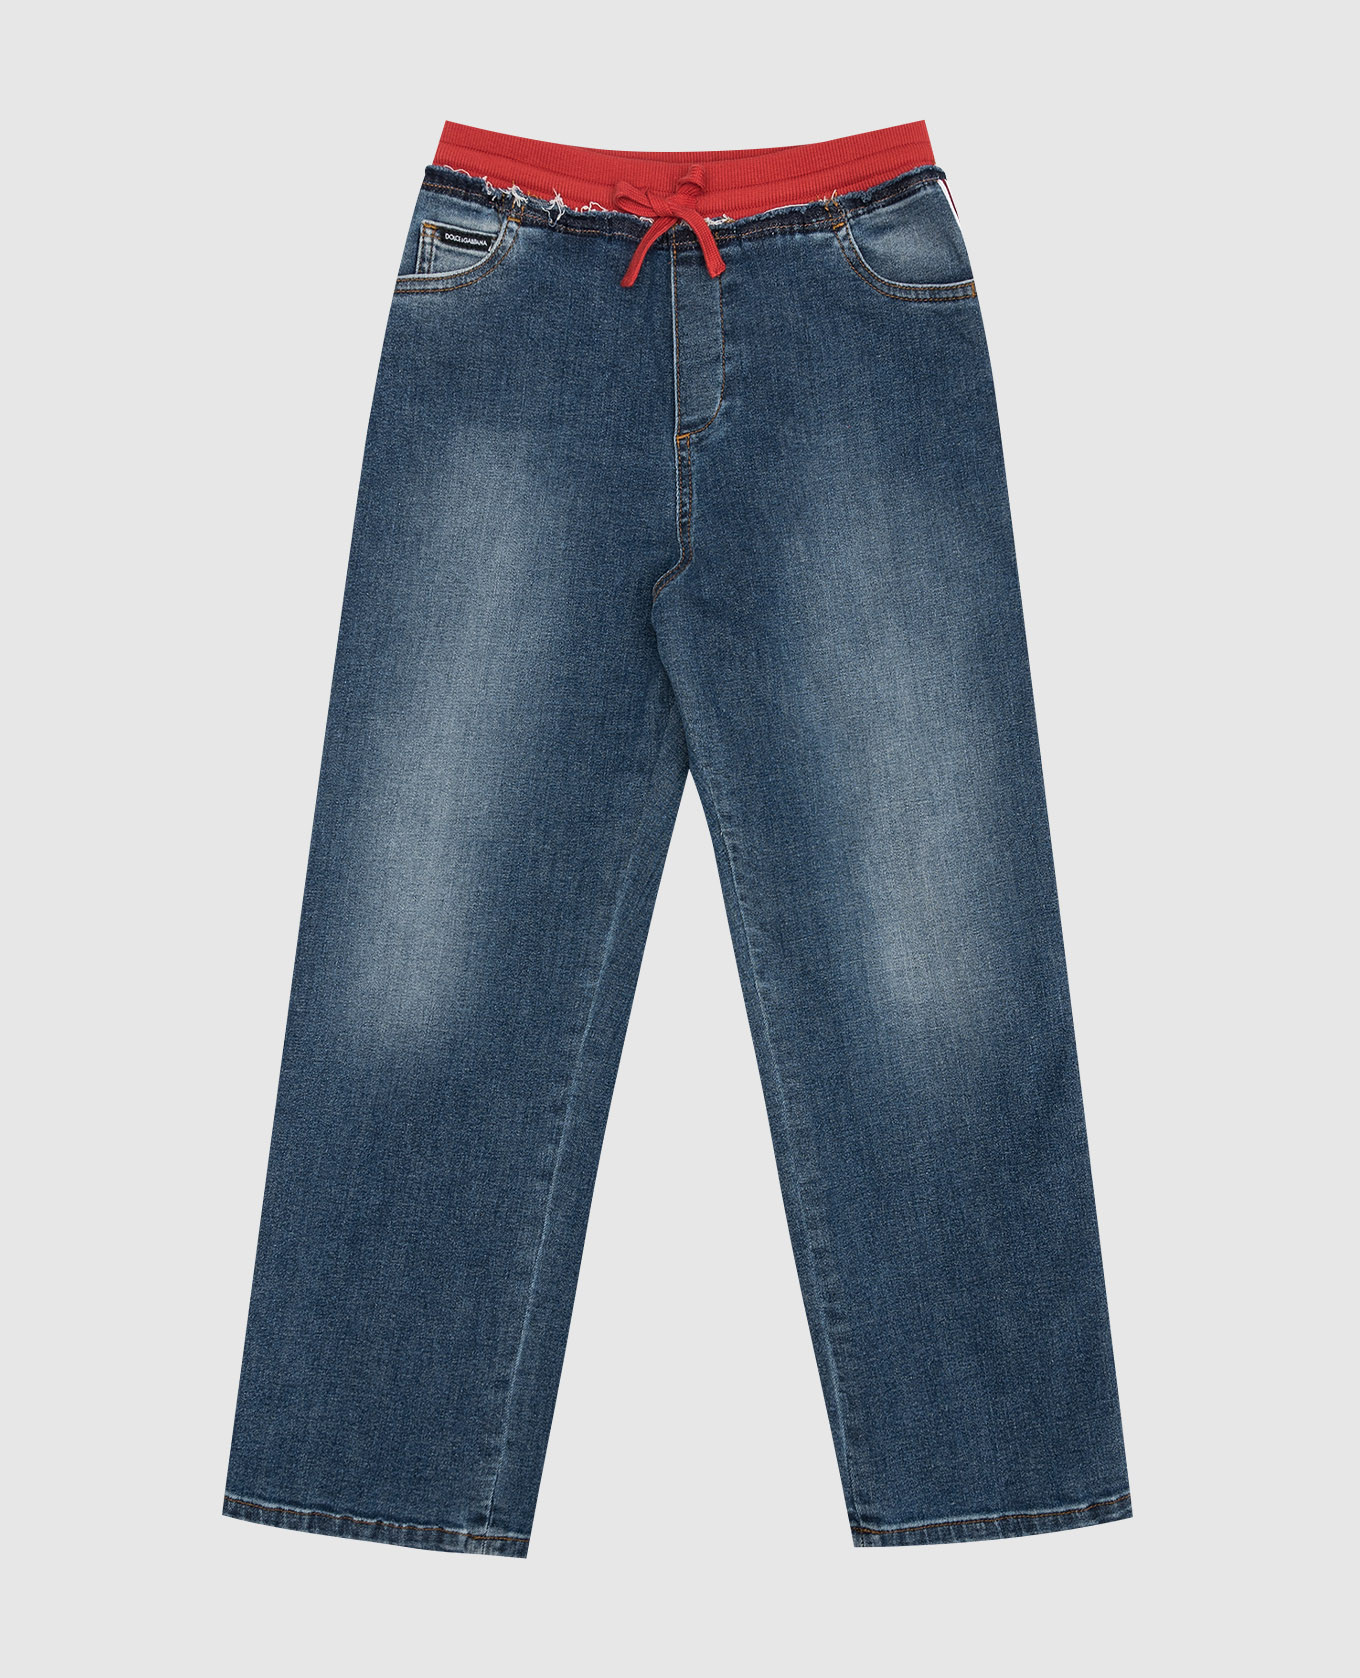 clipart jordache jeans logo